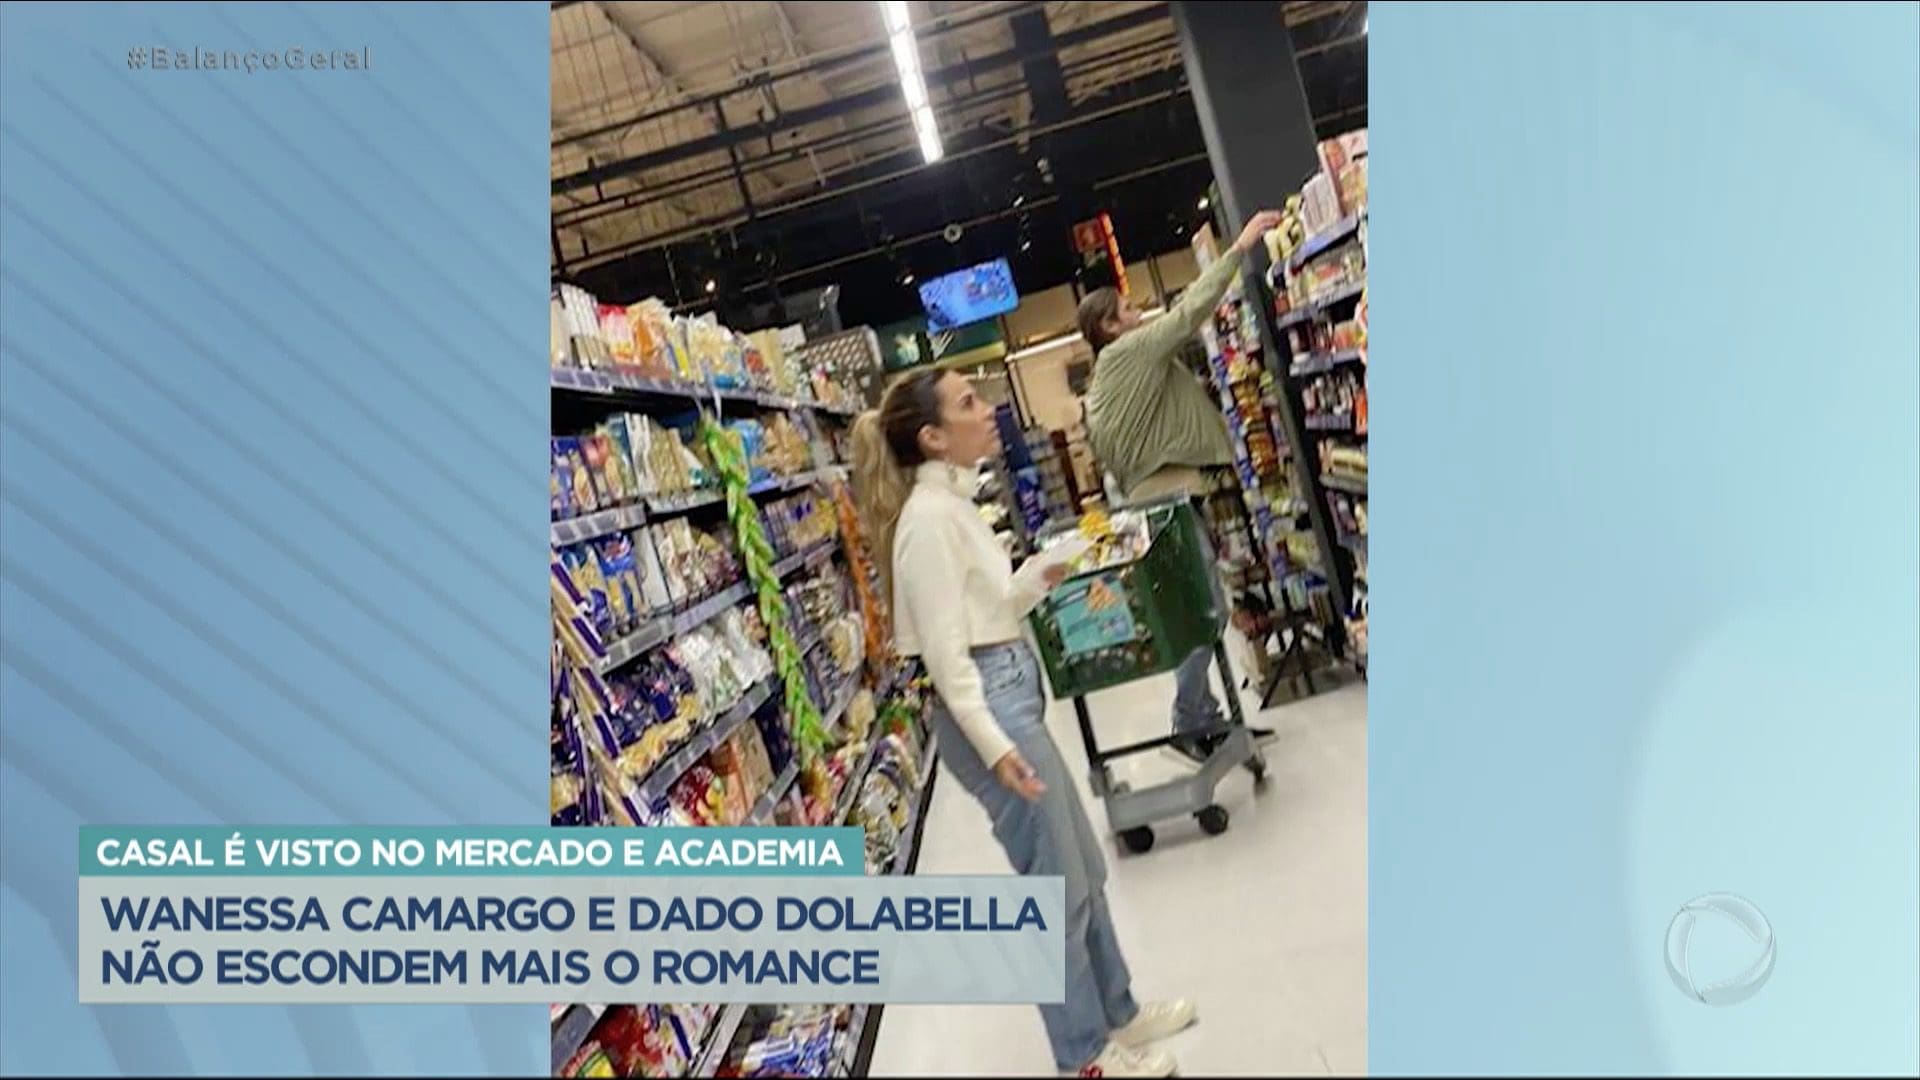 Wanessa Camargo e Dado Dolabella não escondem romance!